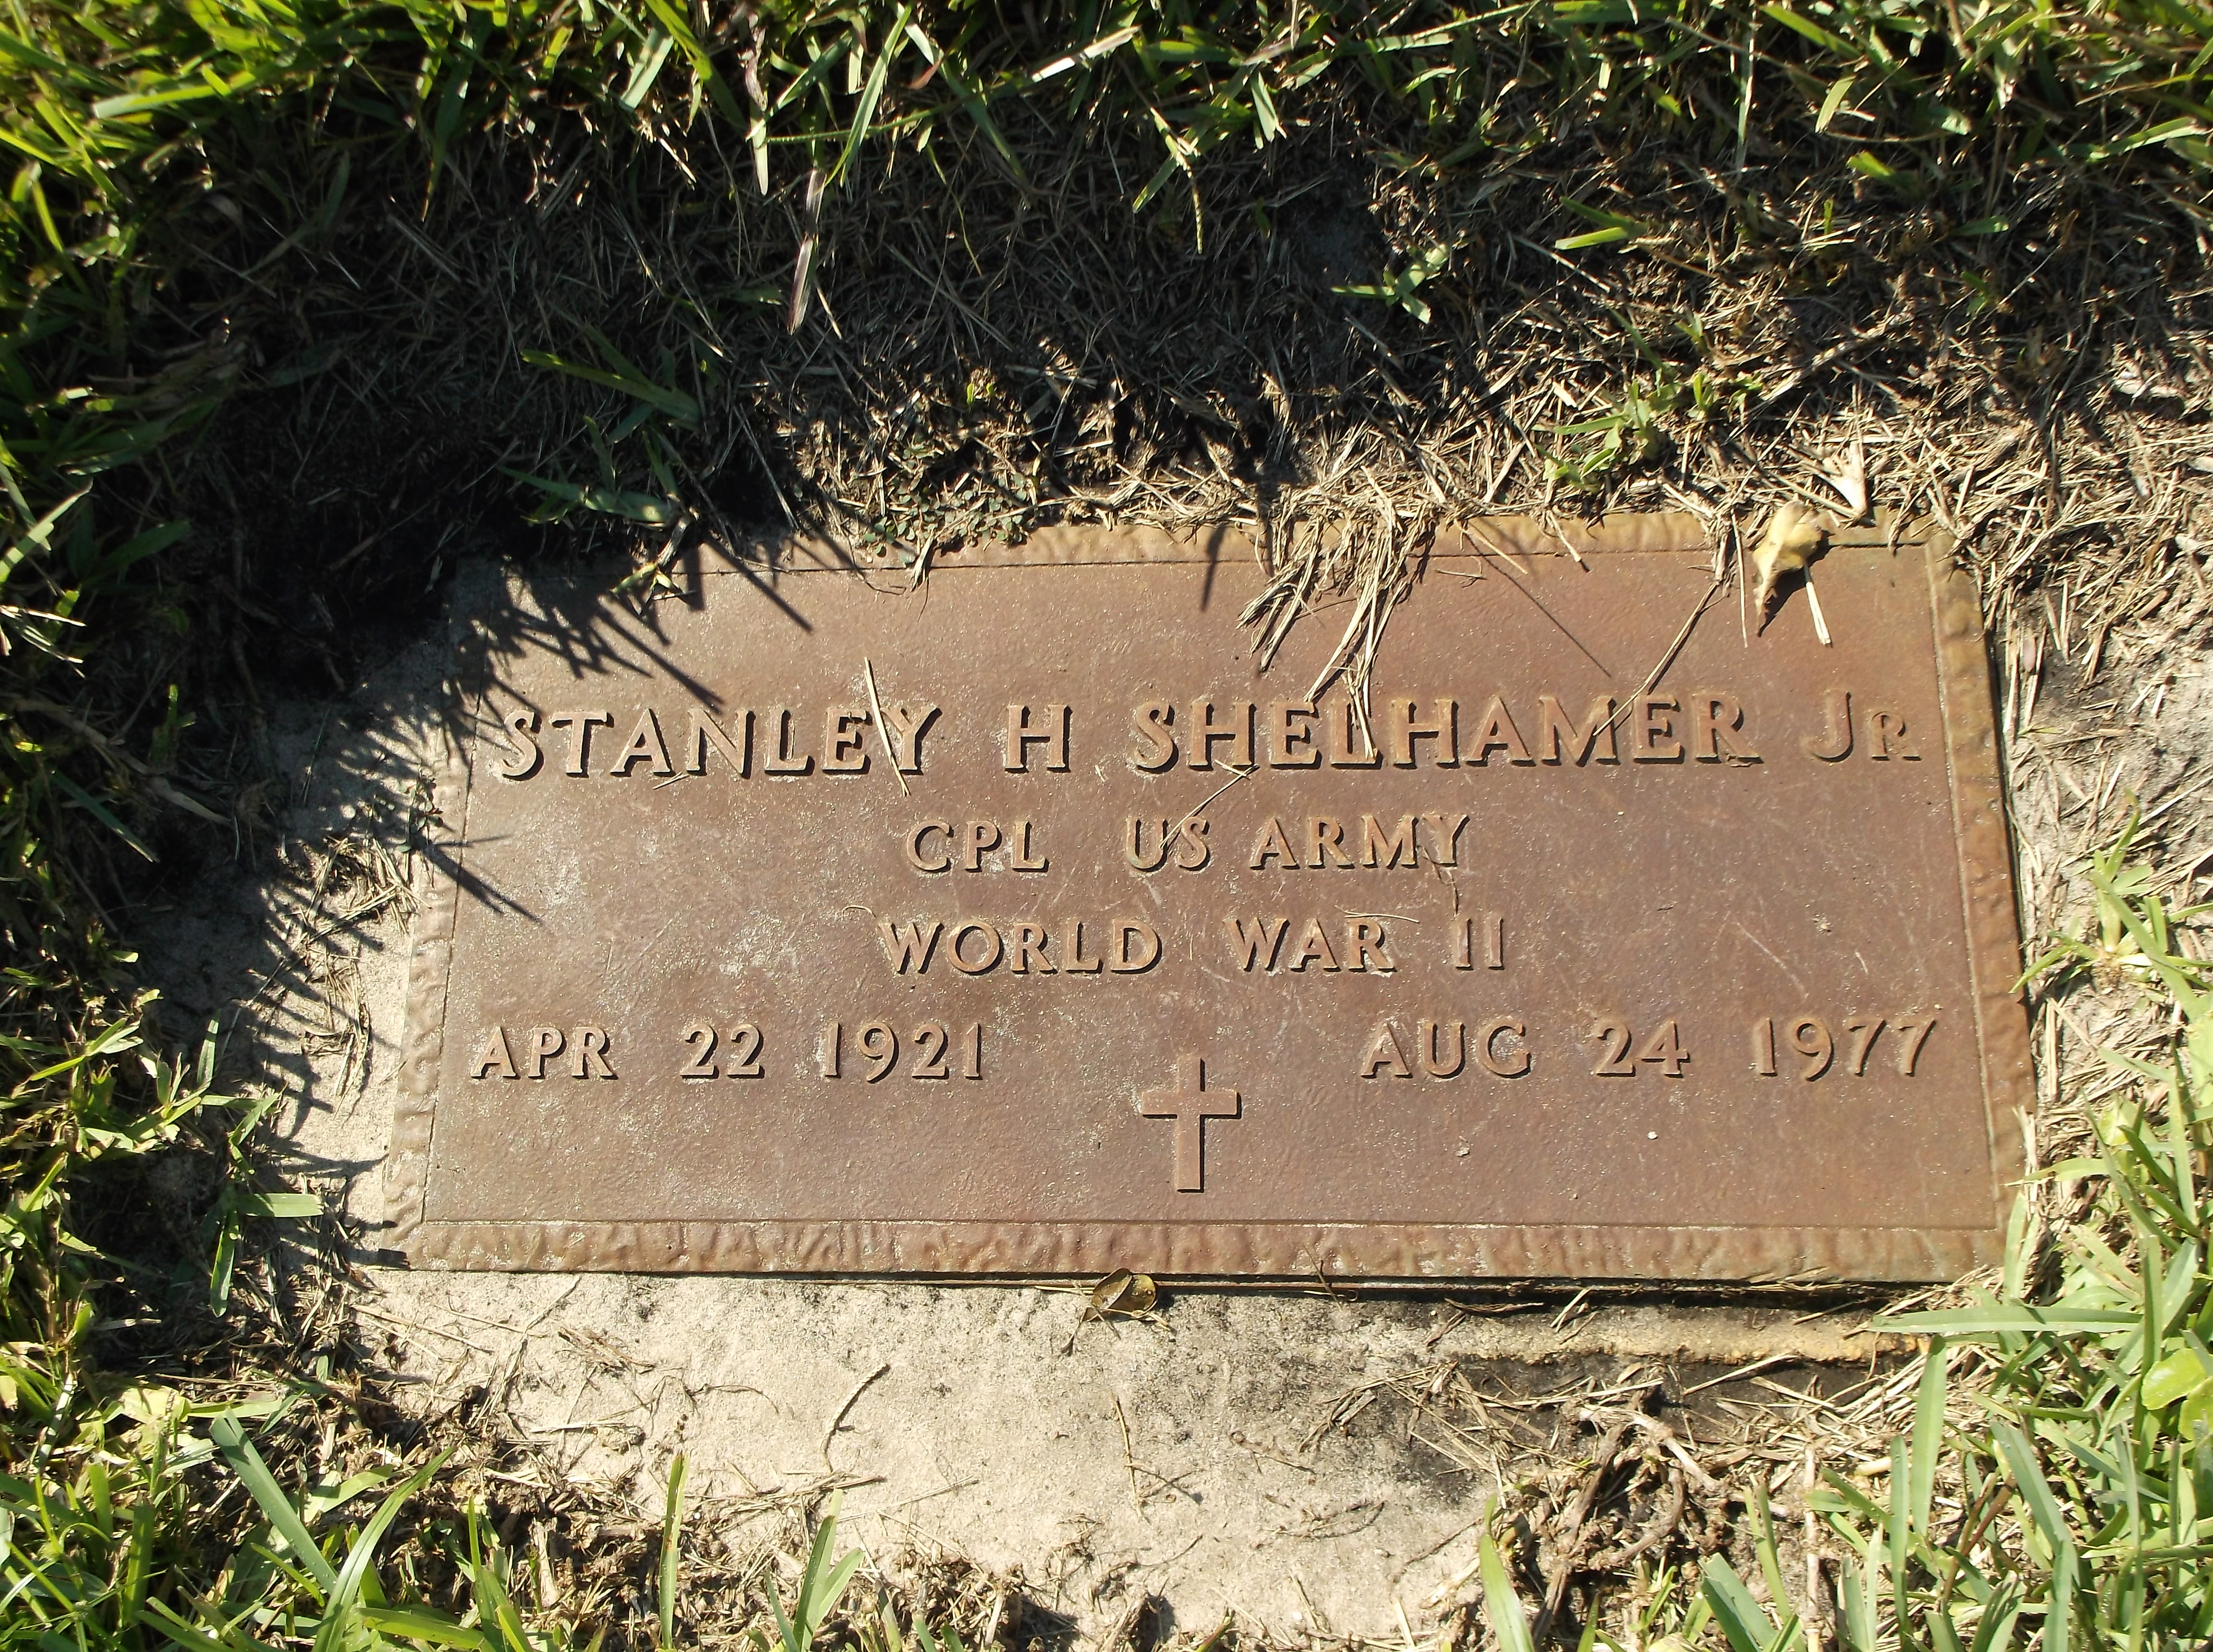 Stanley H Shelhamer, Jr